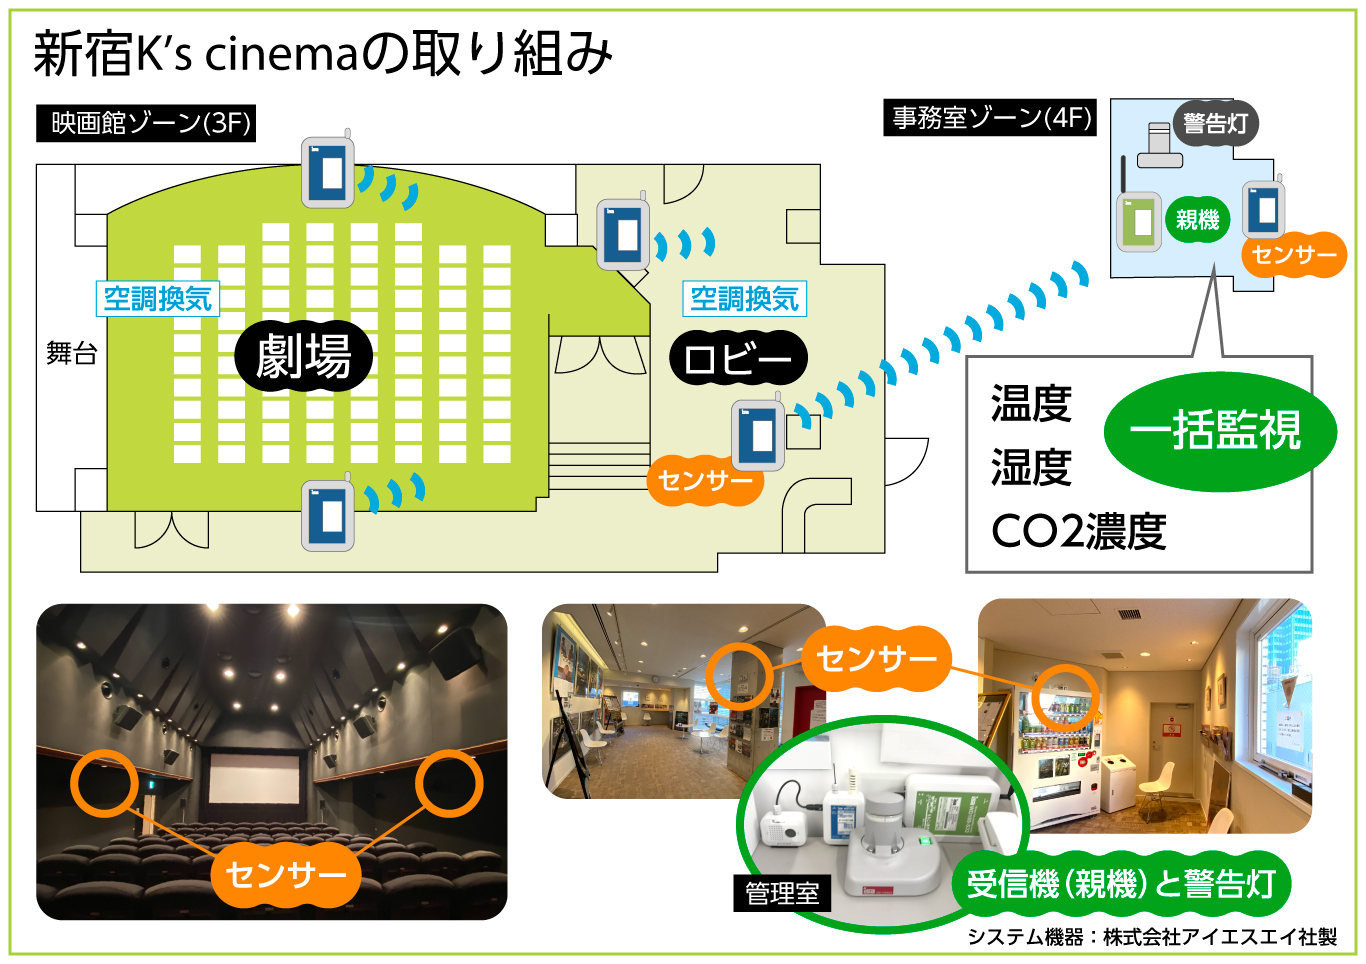 新宿k S Cinemaでは 業界に先駆け Iot技術による 映画館施設内の環境モニタリング 警告灯システム を導入 お客様の安心 安全に向けた新たな取り組みを開始 新宿k S Cinemaのプレスリリース